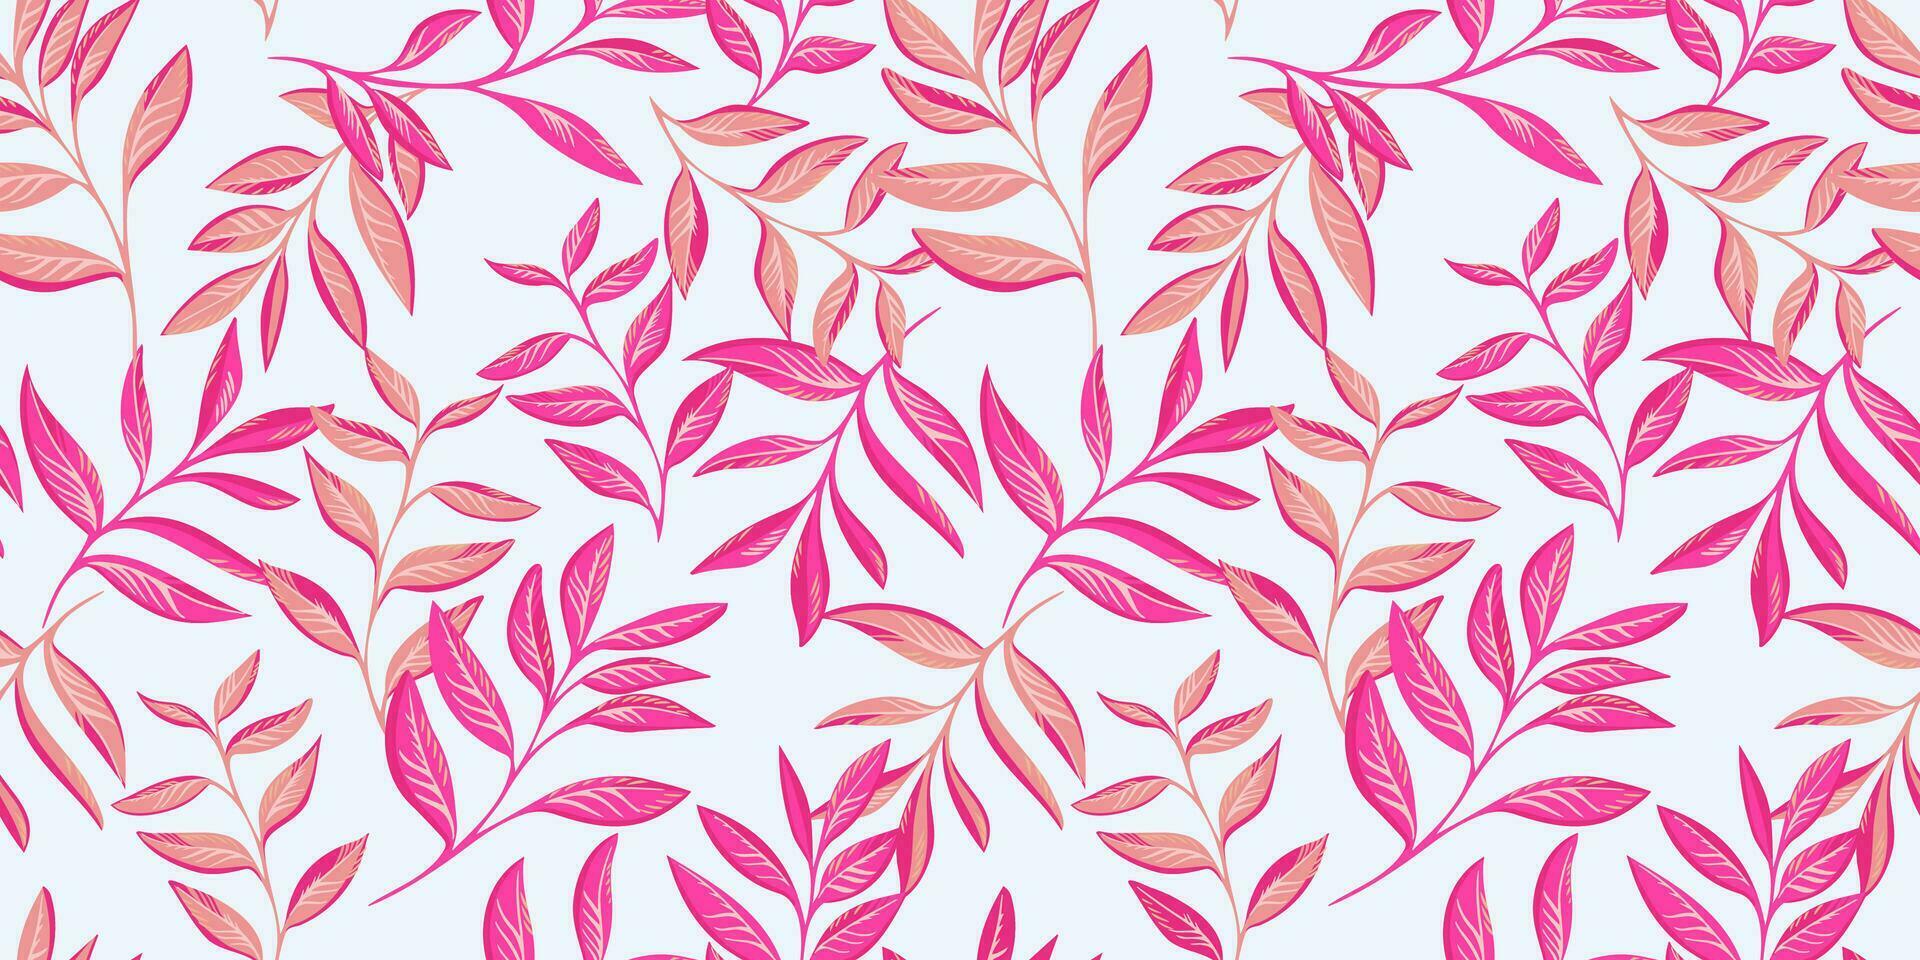 konstnärlig stiliserade stjälkar löv sammanflätade i en sömlös mönster. vektor hand ritade. kreativ tropisk blommig skriva ut. abstrakt botanisk bakgrund med rosa blad grenar. design för mode, tyg